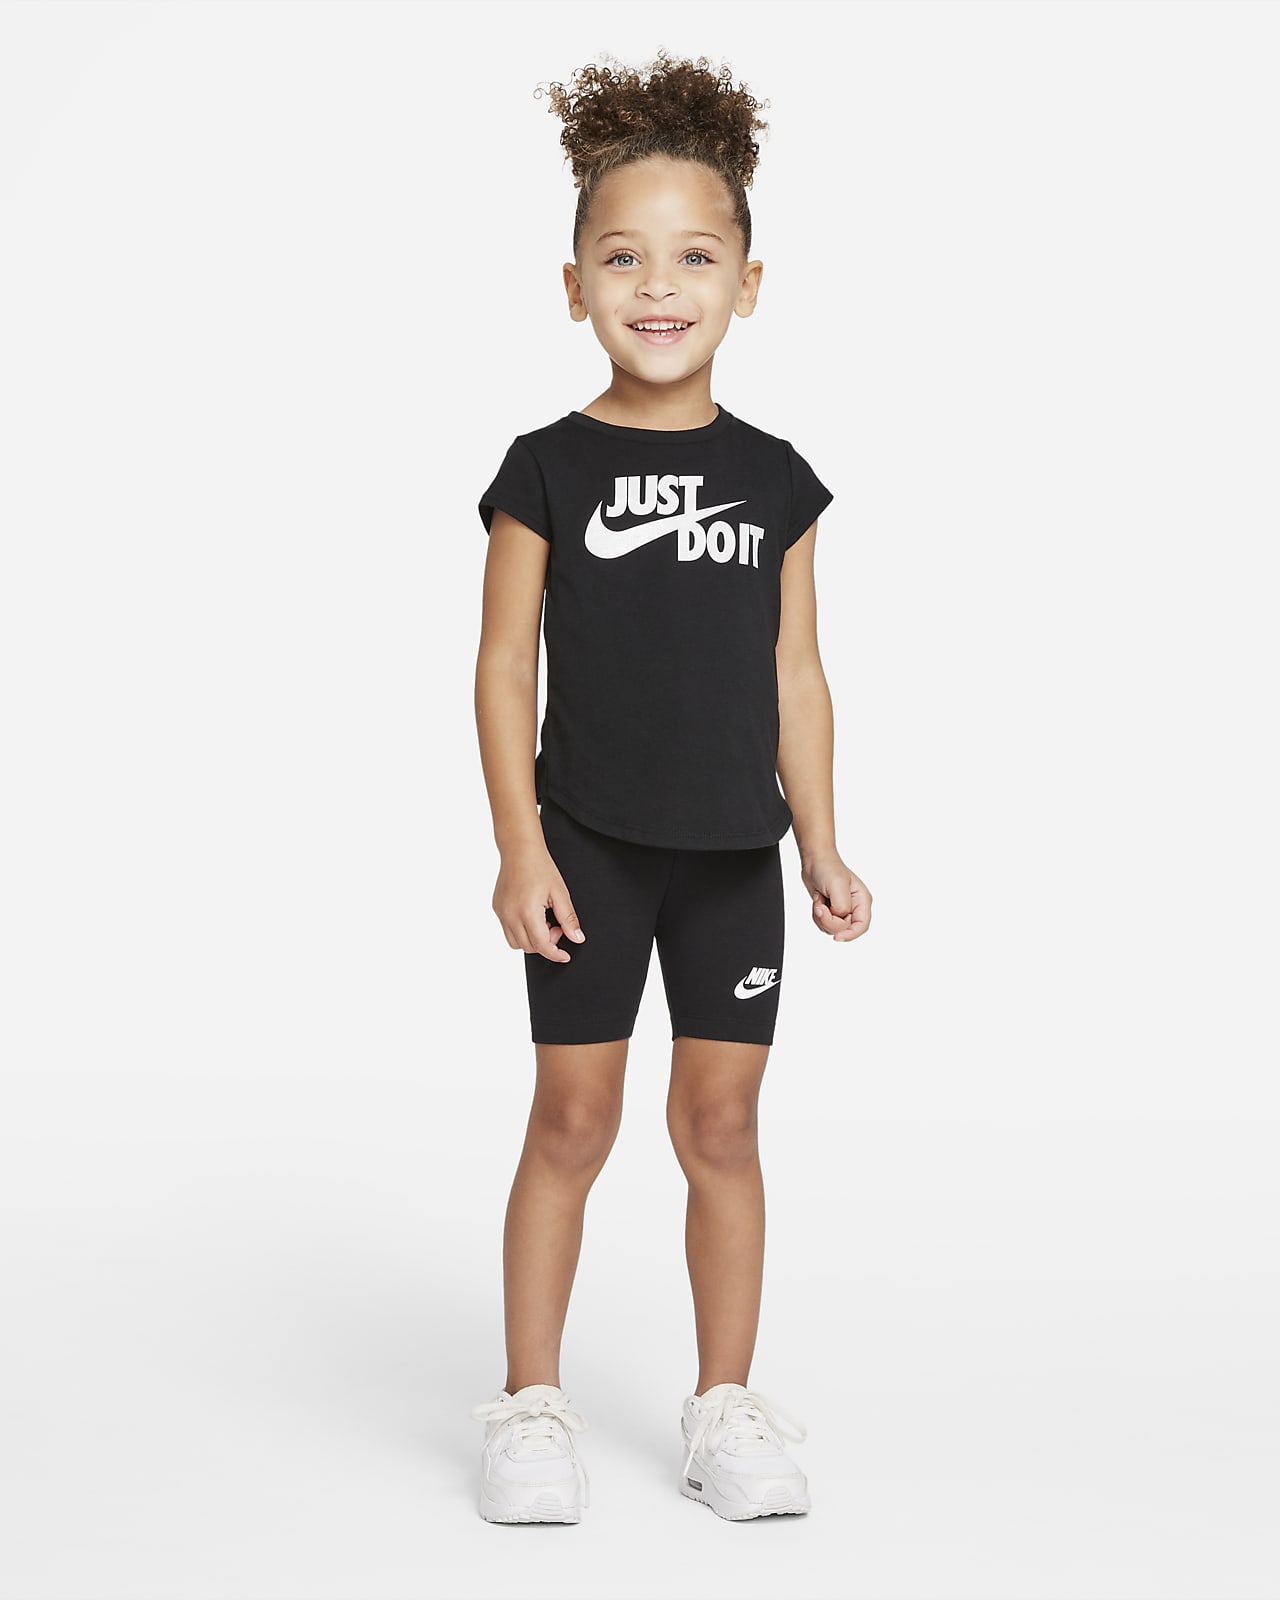 Nike Toddler Bike Shorts